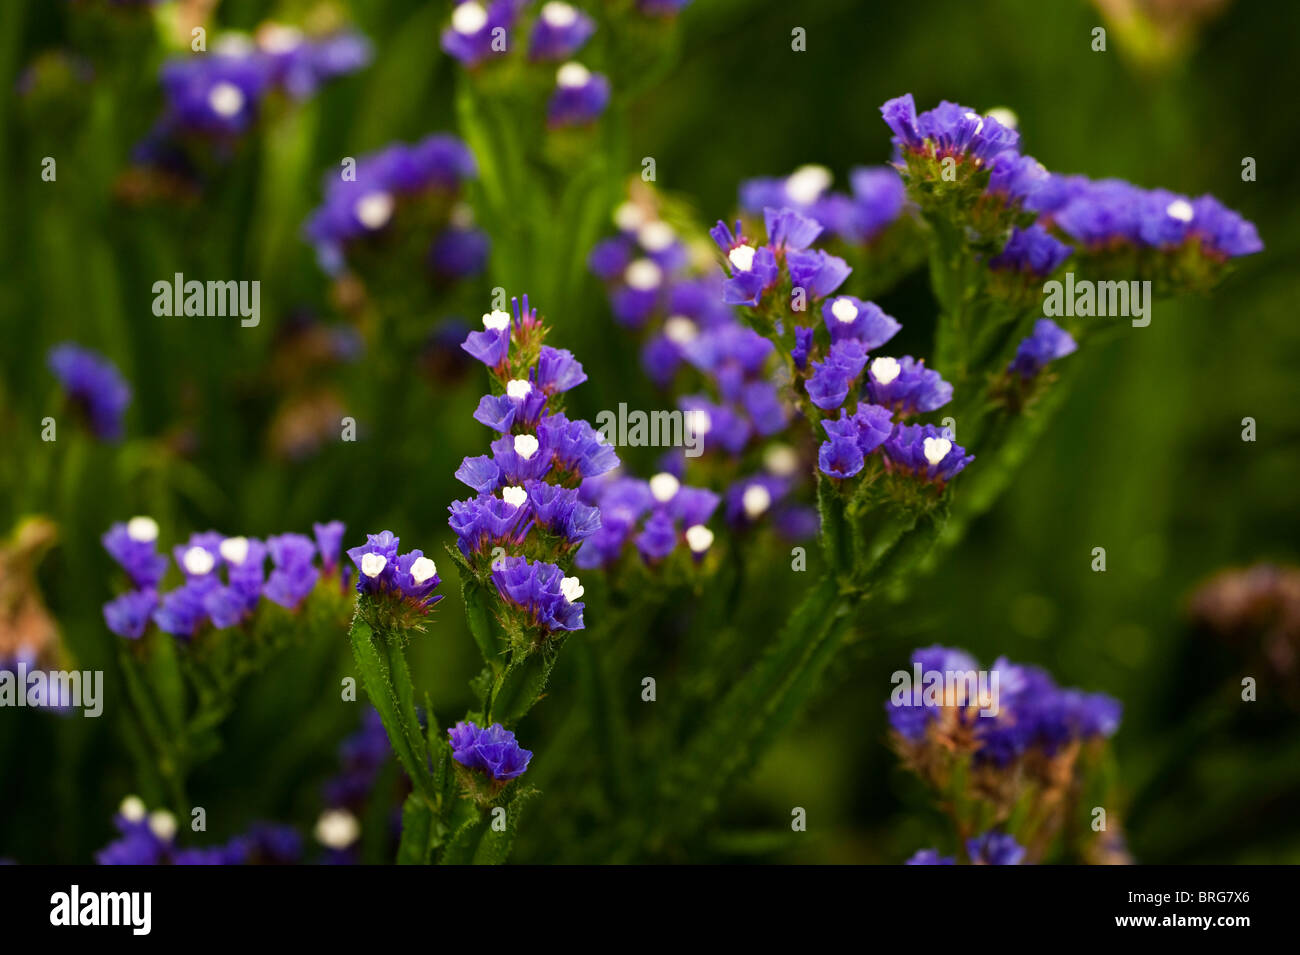 Statice, Limonium sinuatum 'Dark Blue', in flower Stock Photo